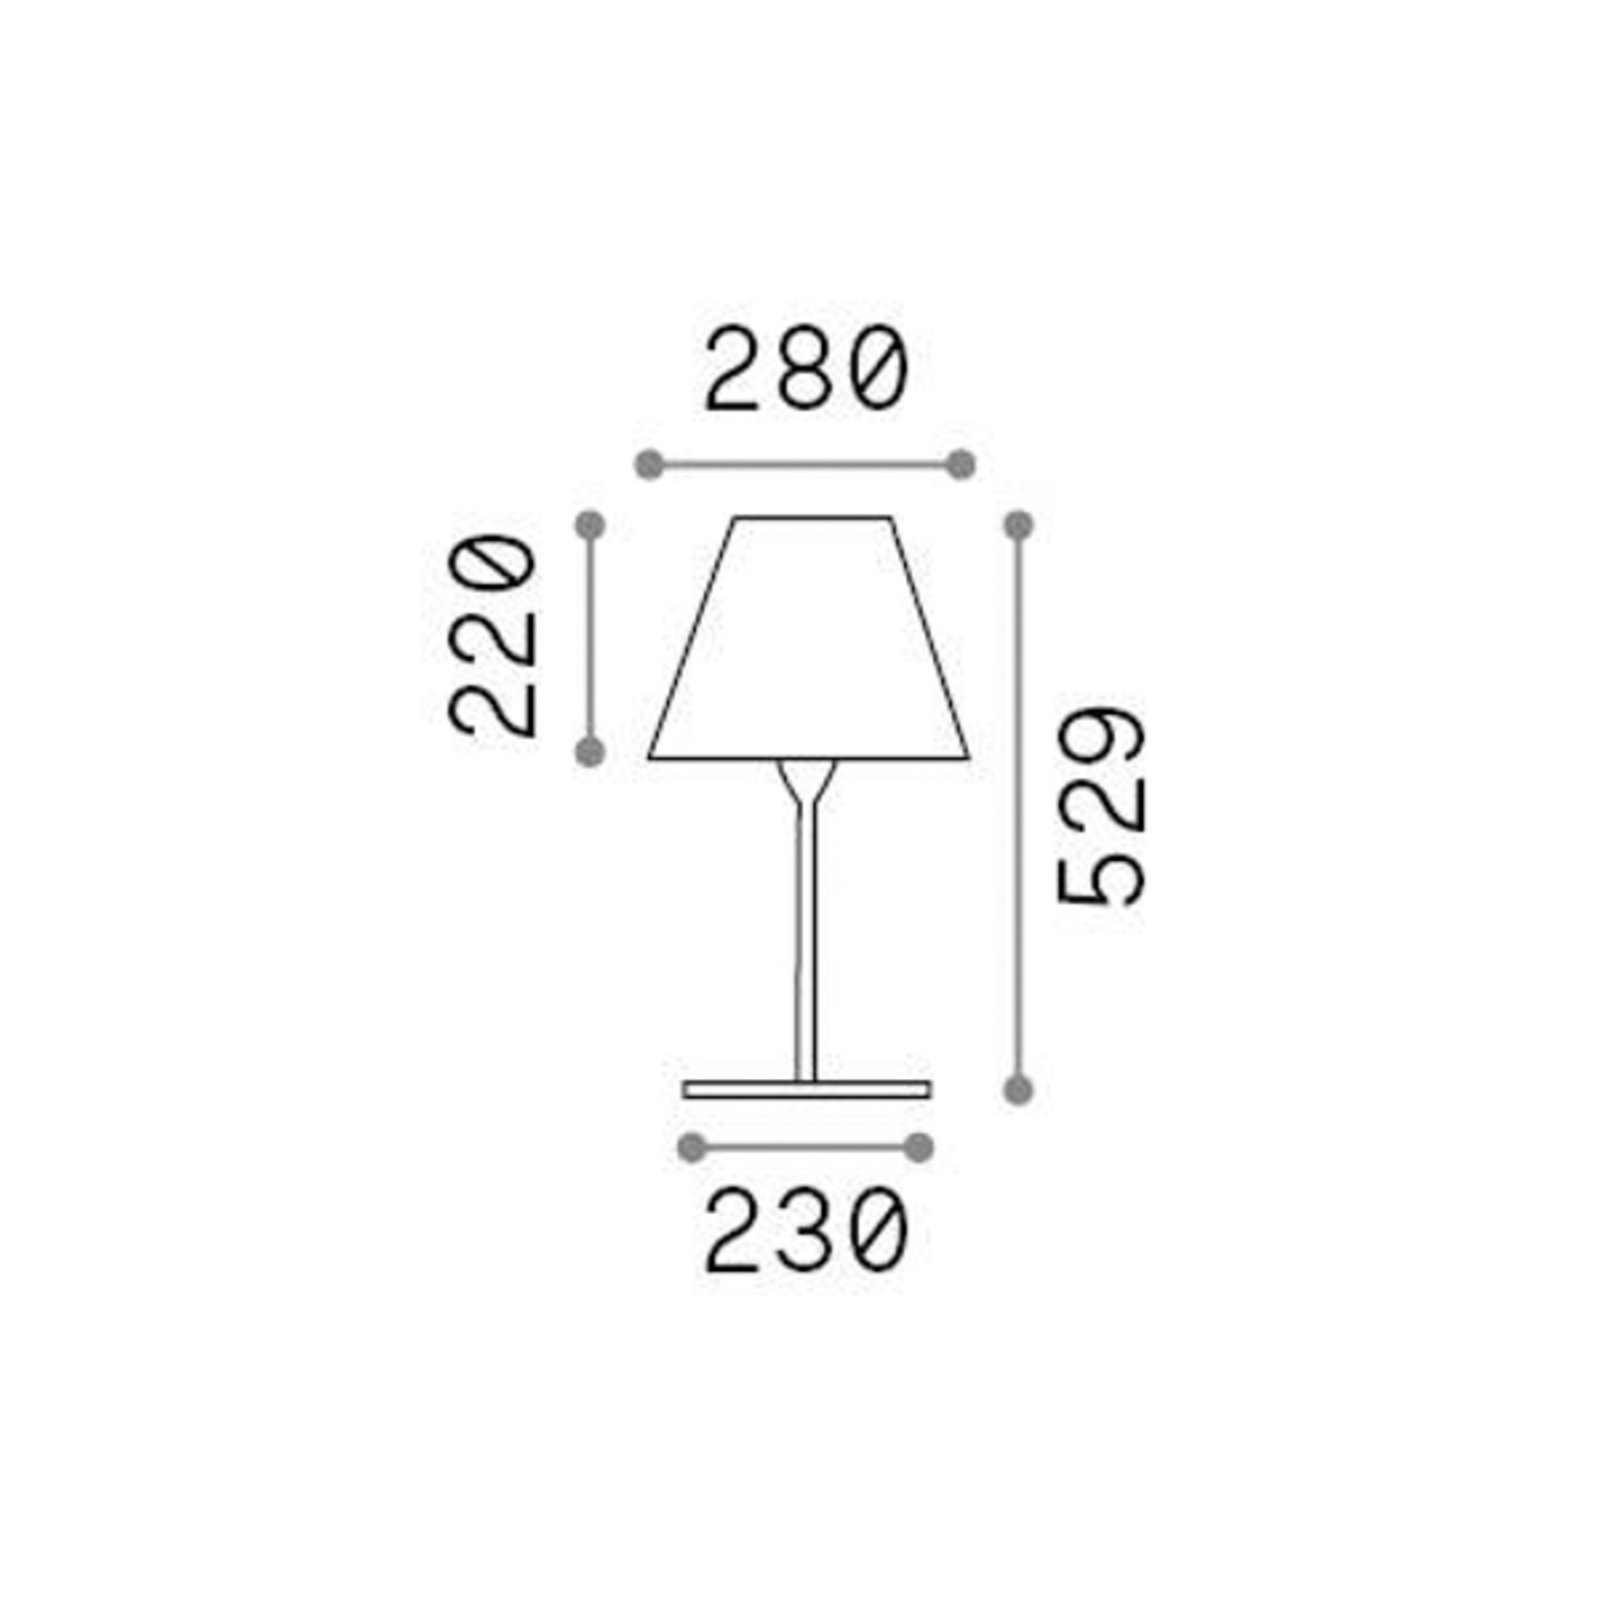 Ideal Lux Arcadia tafellamp voor buiten, antraciet, hoogte 53 cm